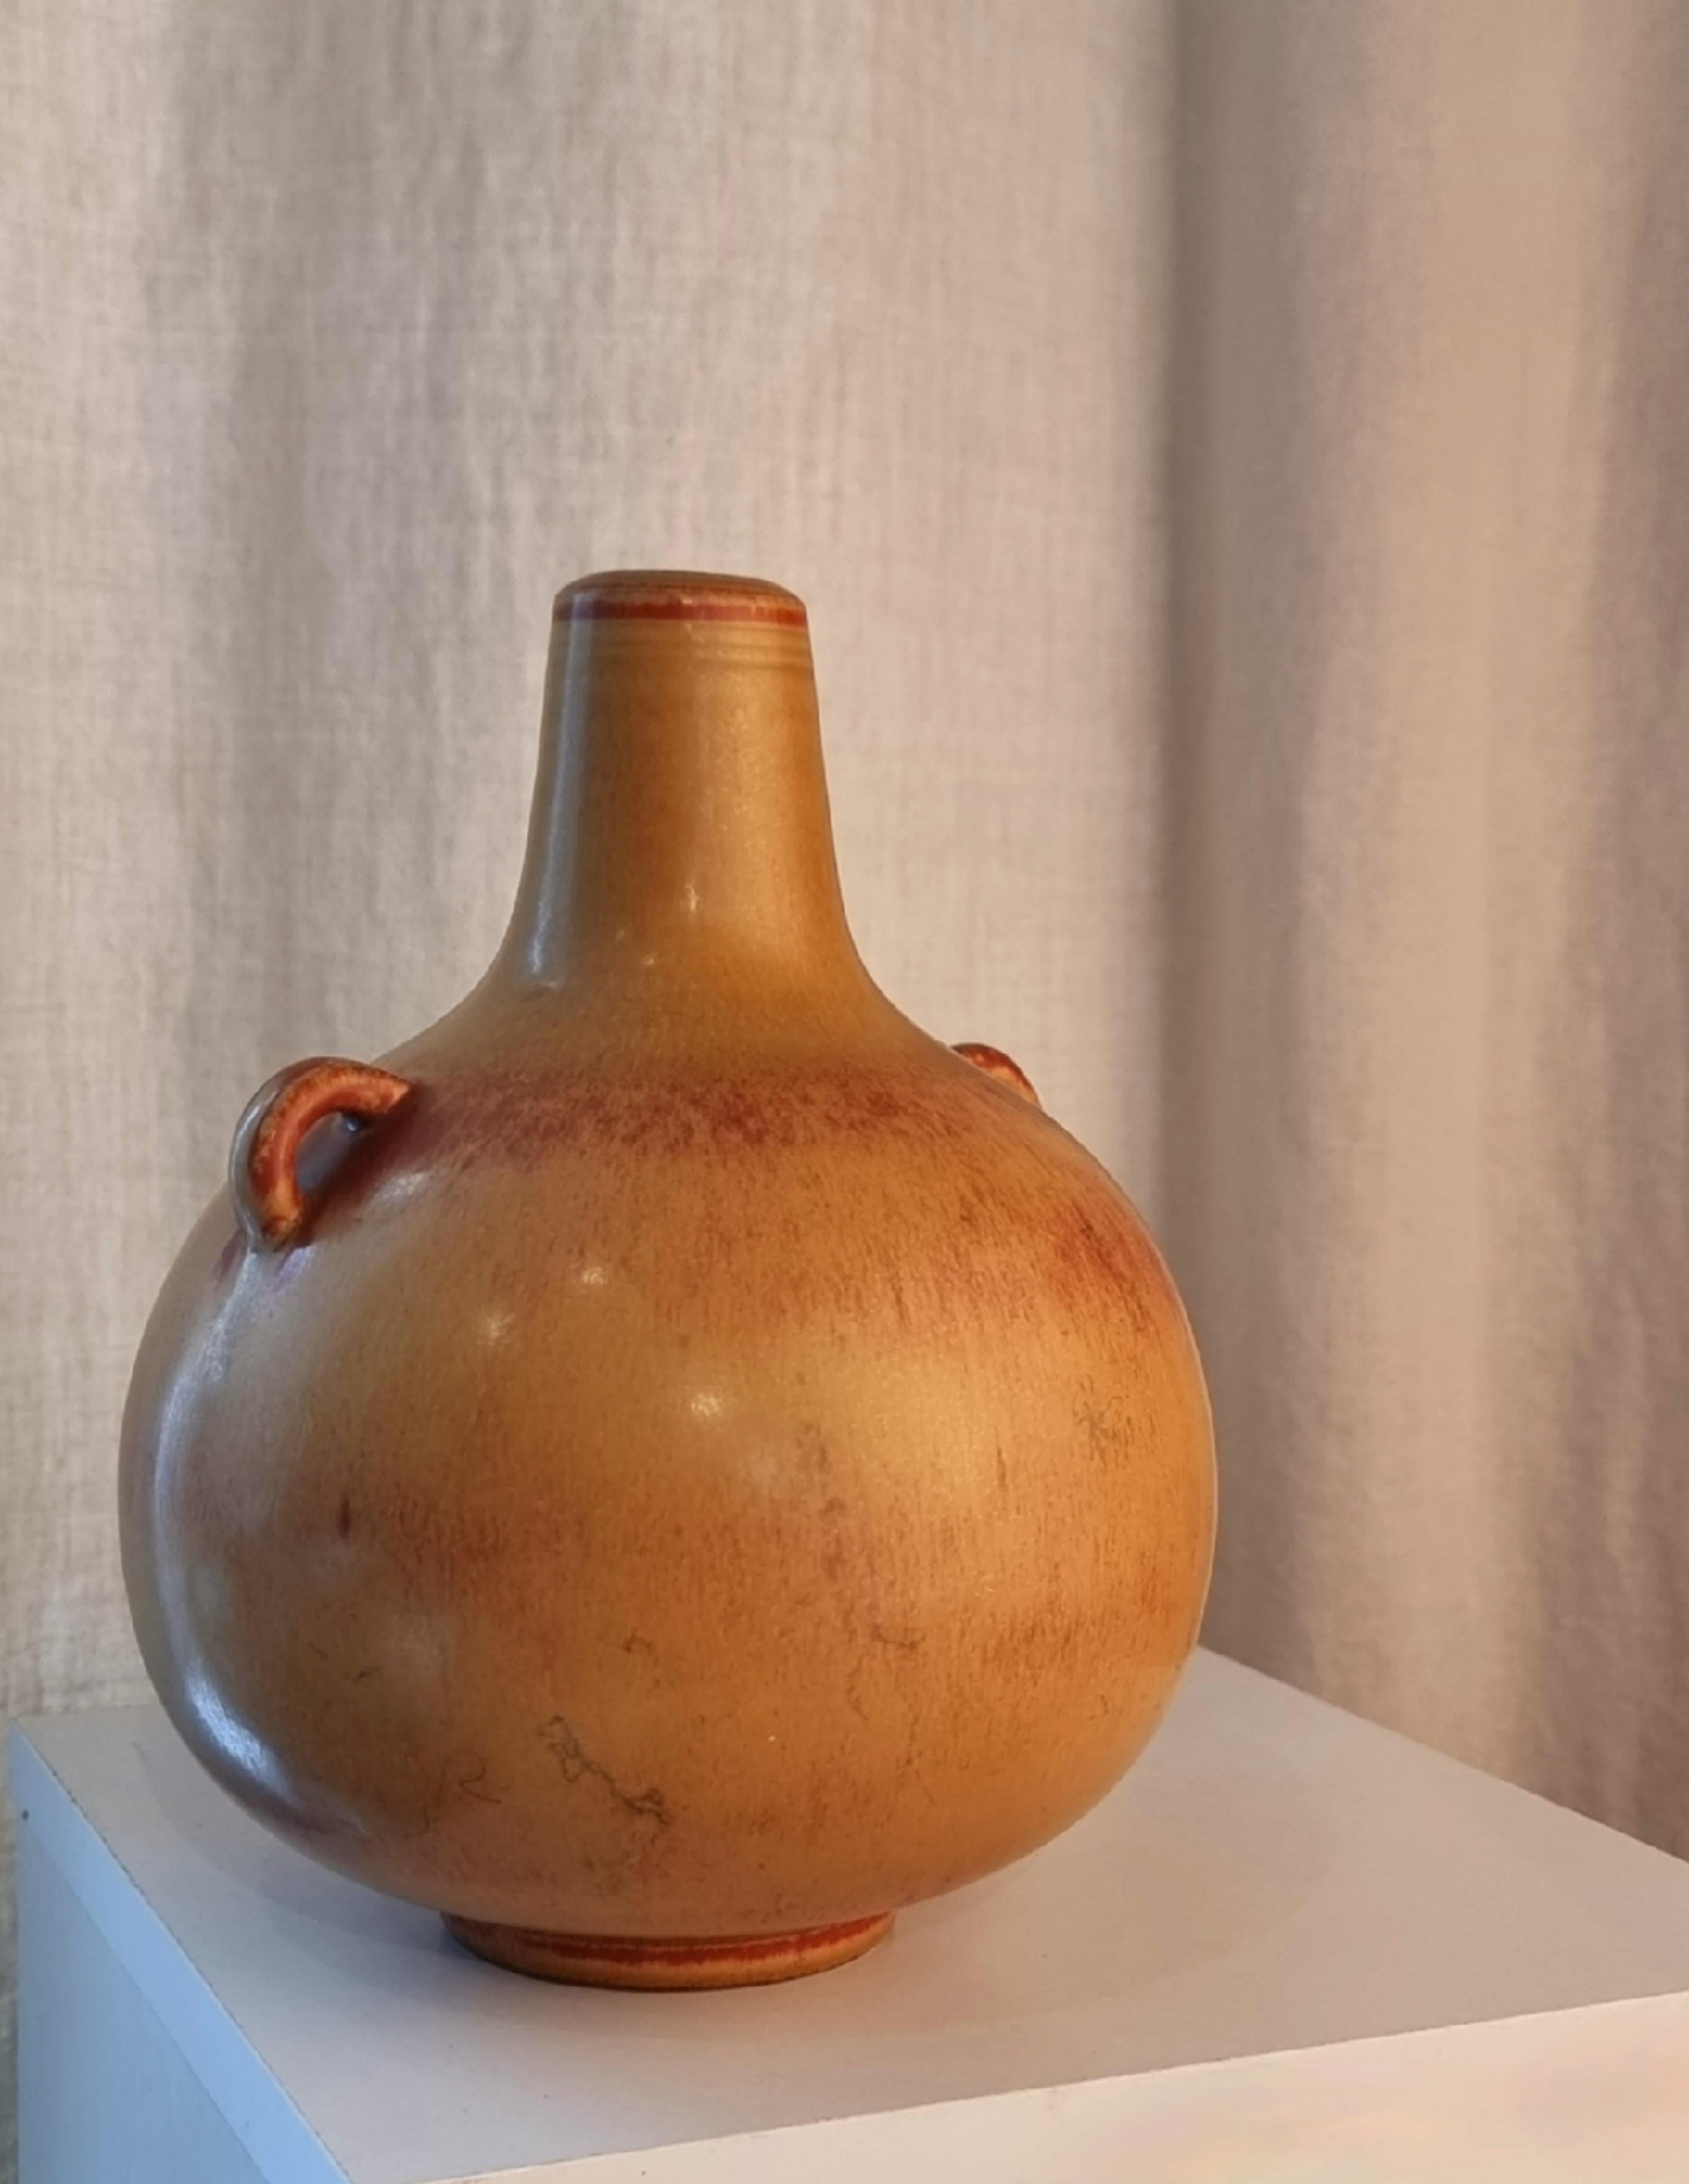 Vase aus Steingut mit brauner Hasenfellglasur und zwei kleinen Henkeln, von Gunnar Nylund für Rörstrand, Schweden, Mitte 1900.

In schönem Zustand, kleinere Gebrauchs- und Abnutzungsspuren. 

